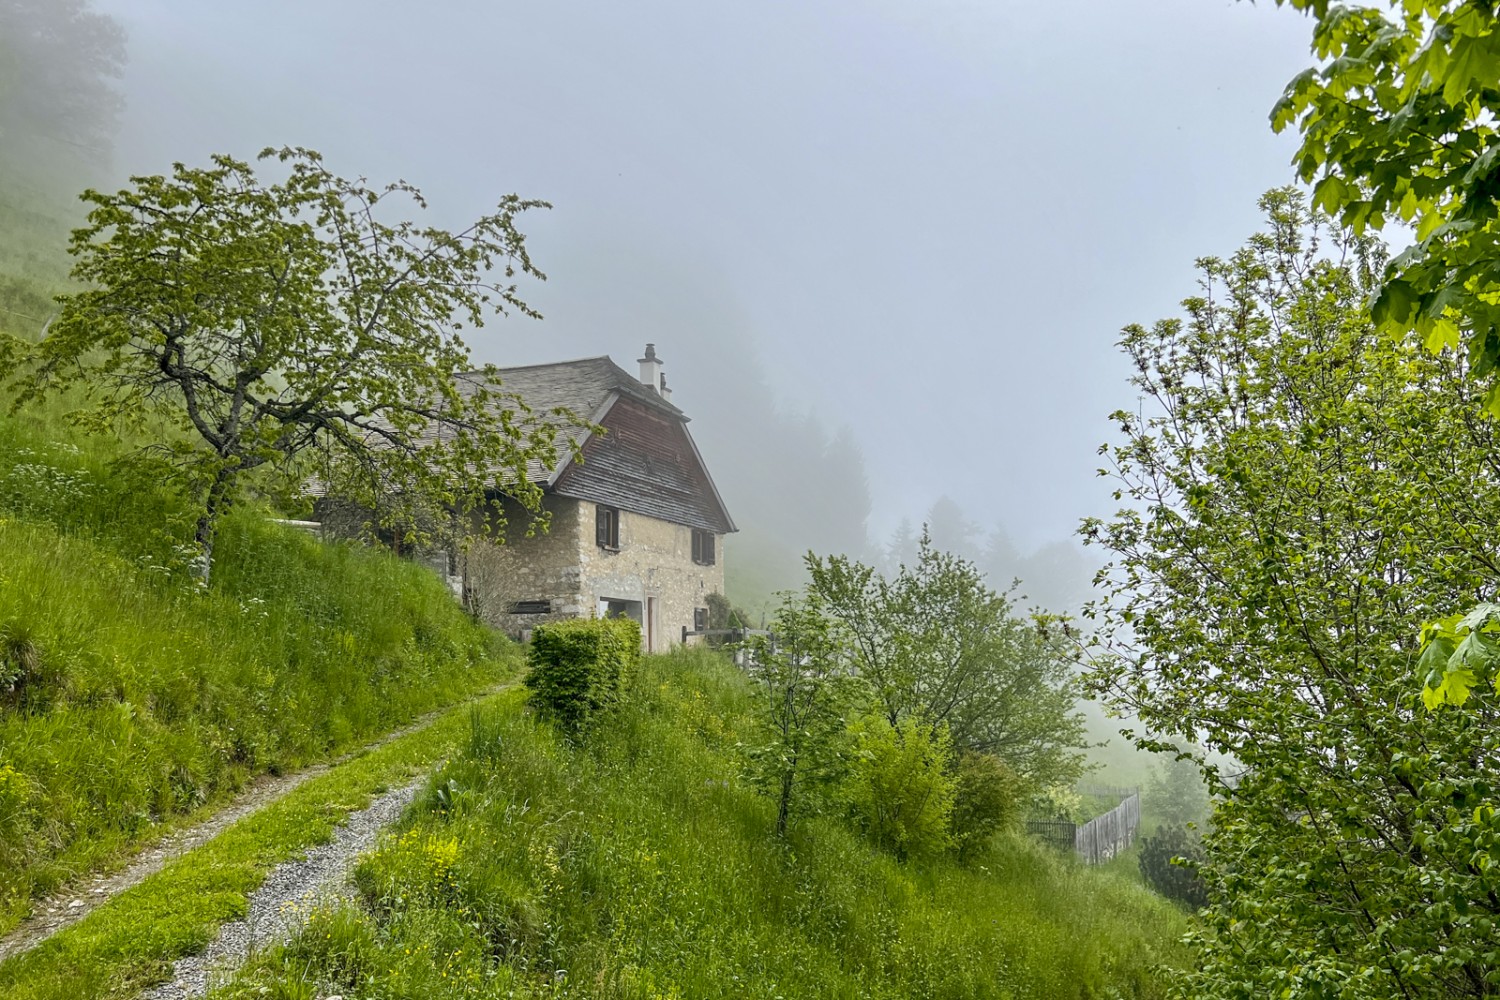 La montée à En Sonchaux est émaillée de belles maisons rurales. Photo: Pascal Bourquin